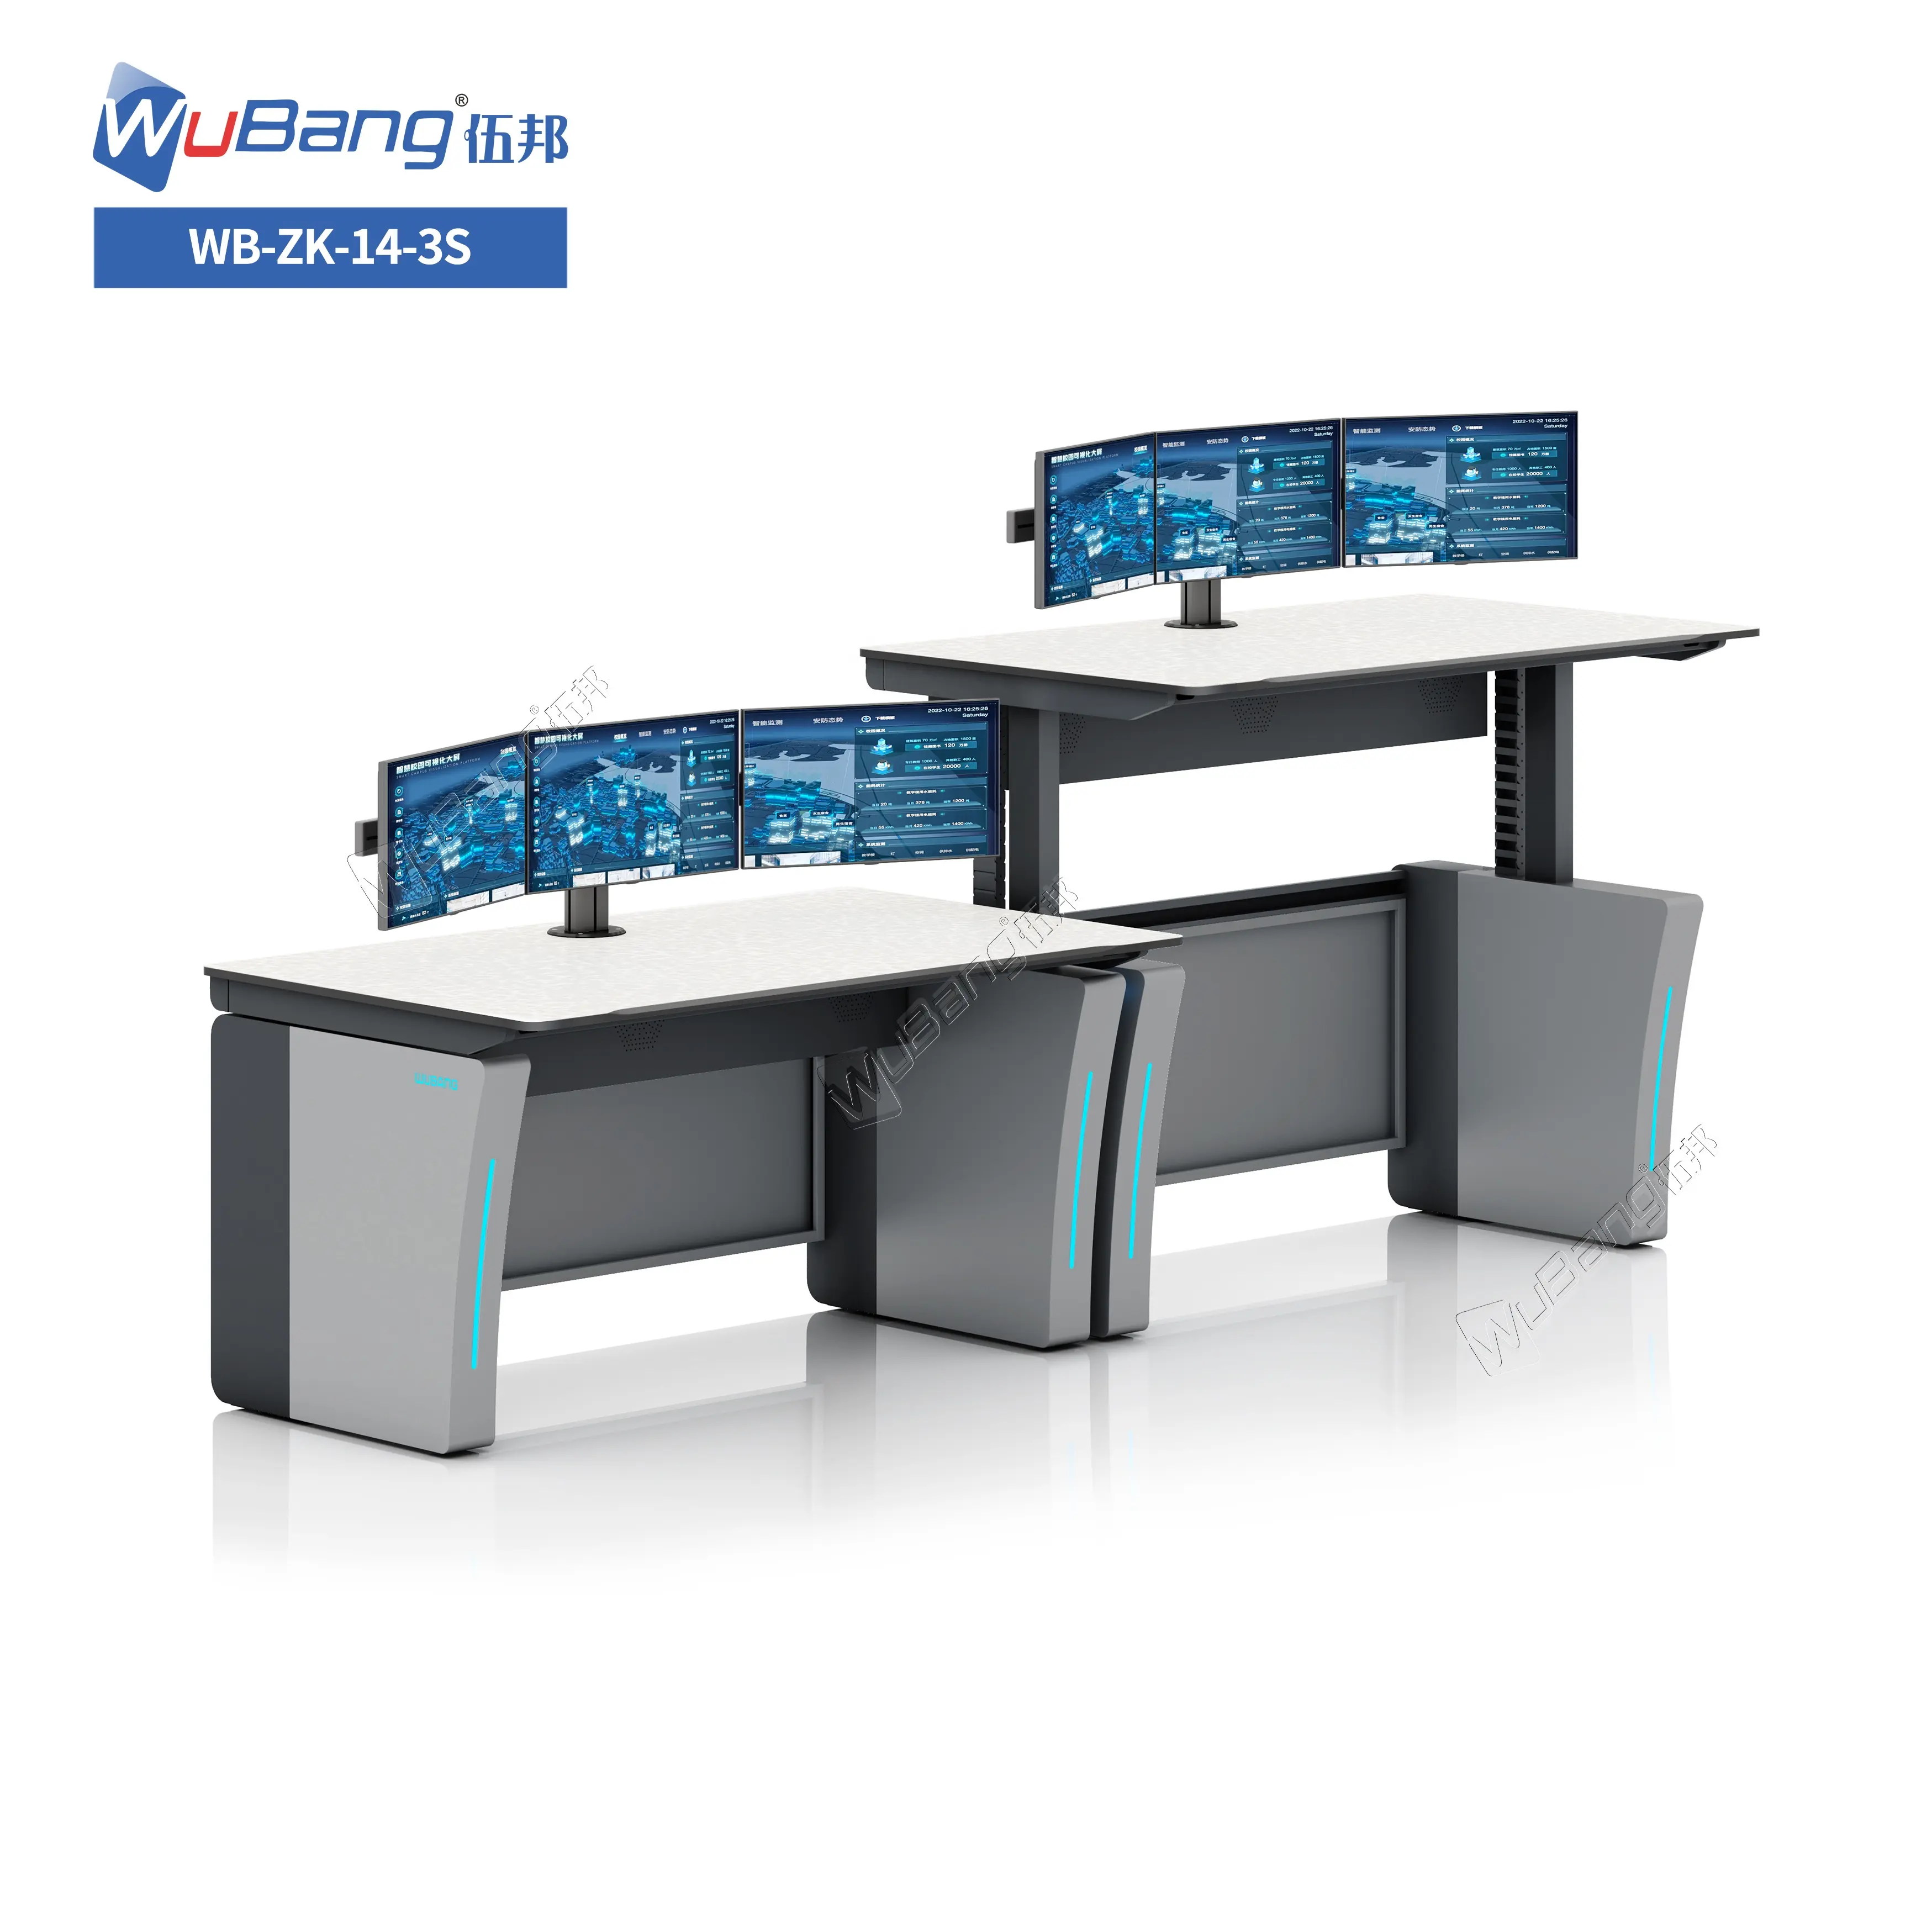 Konsol Monitor dan kontrol ruang pengiriman konsol tinggi dapat disesuaikan kolom pengangkat 3 tahap untuk Operator